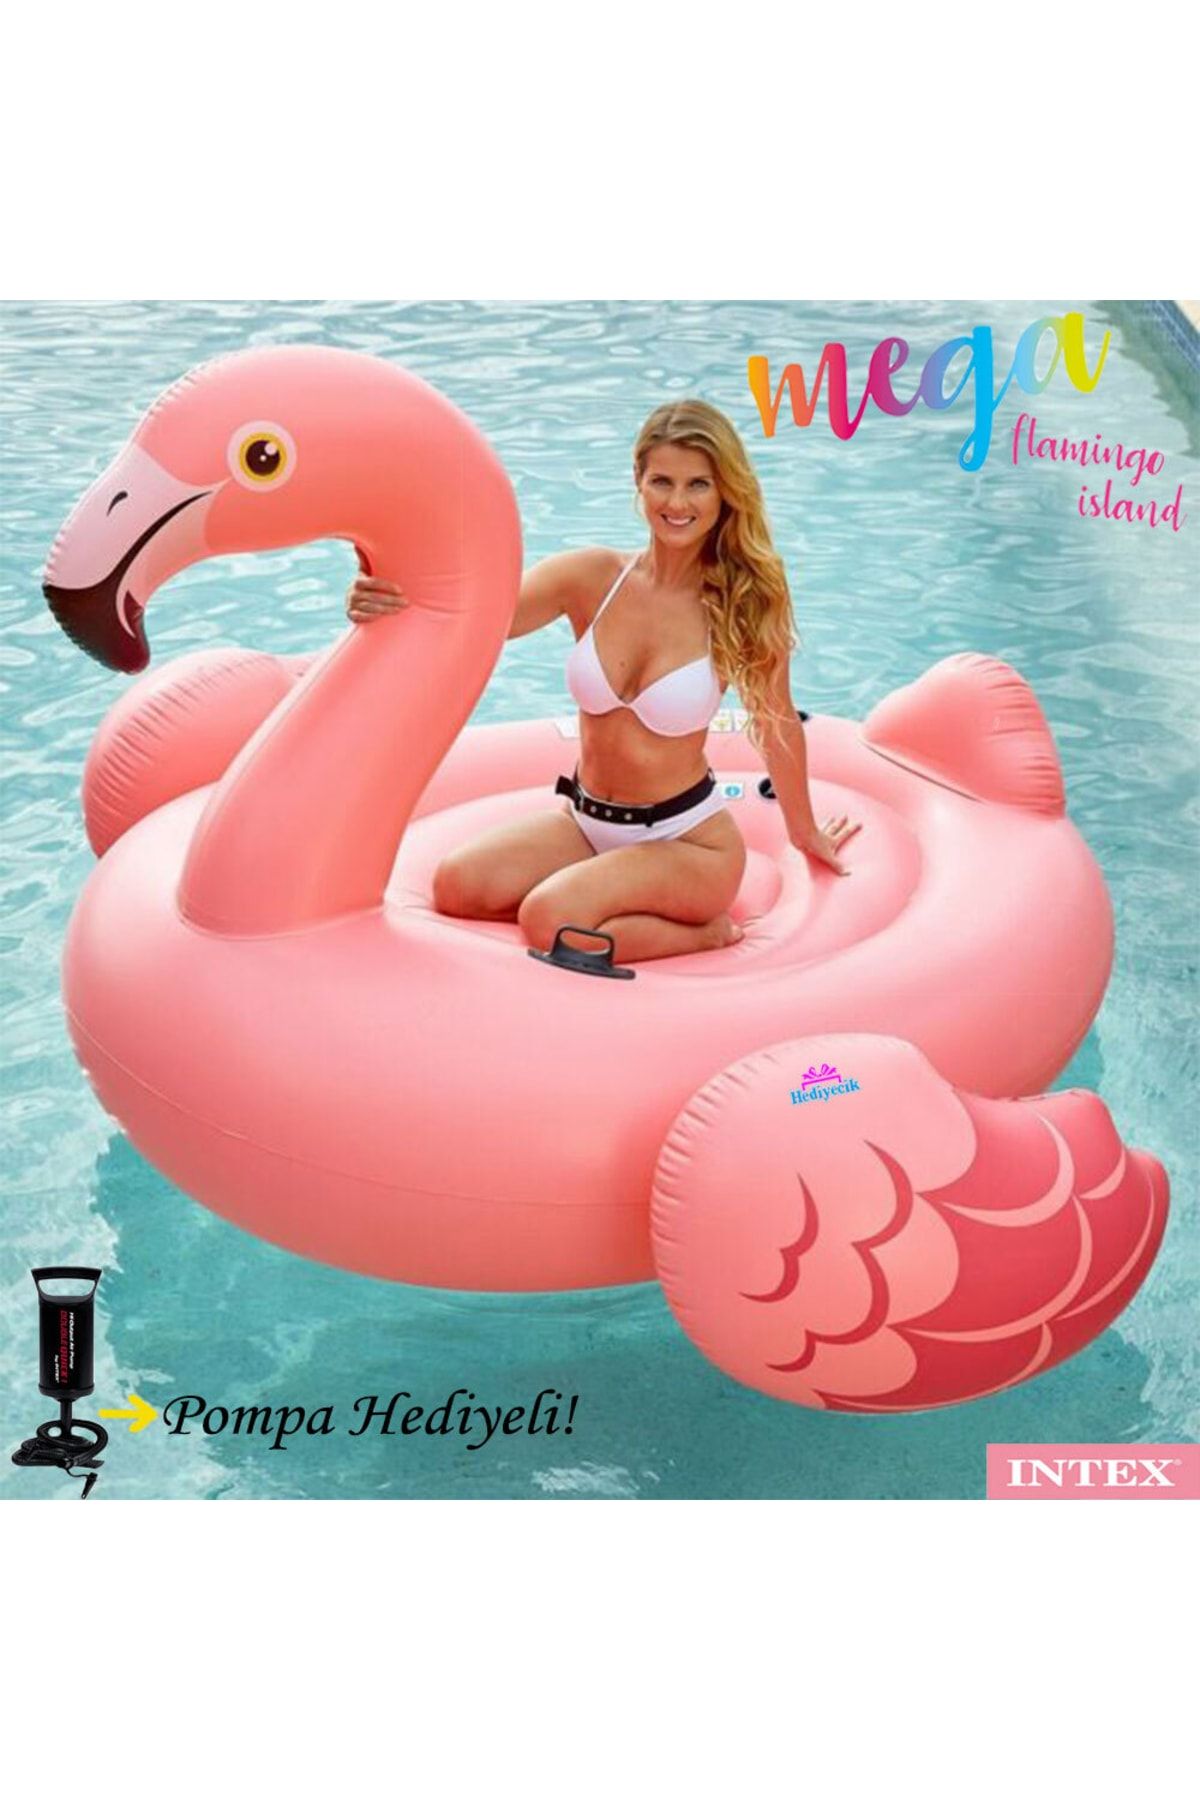 hediyecik Mega Flamingo Island Dev Boy Şişme Havuz Ve Deniz Yatağı 218x211x136 Cm